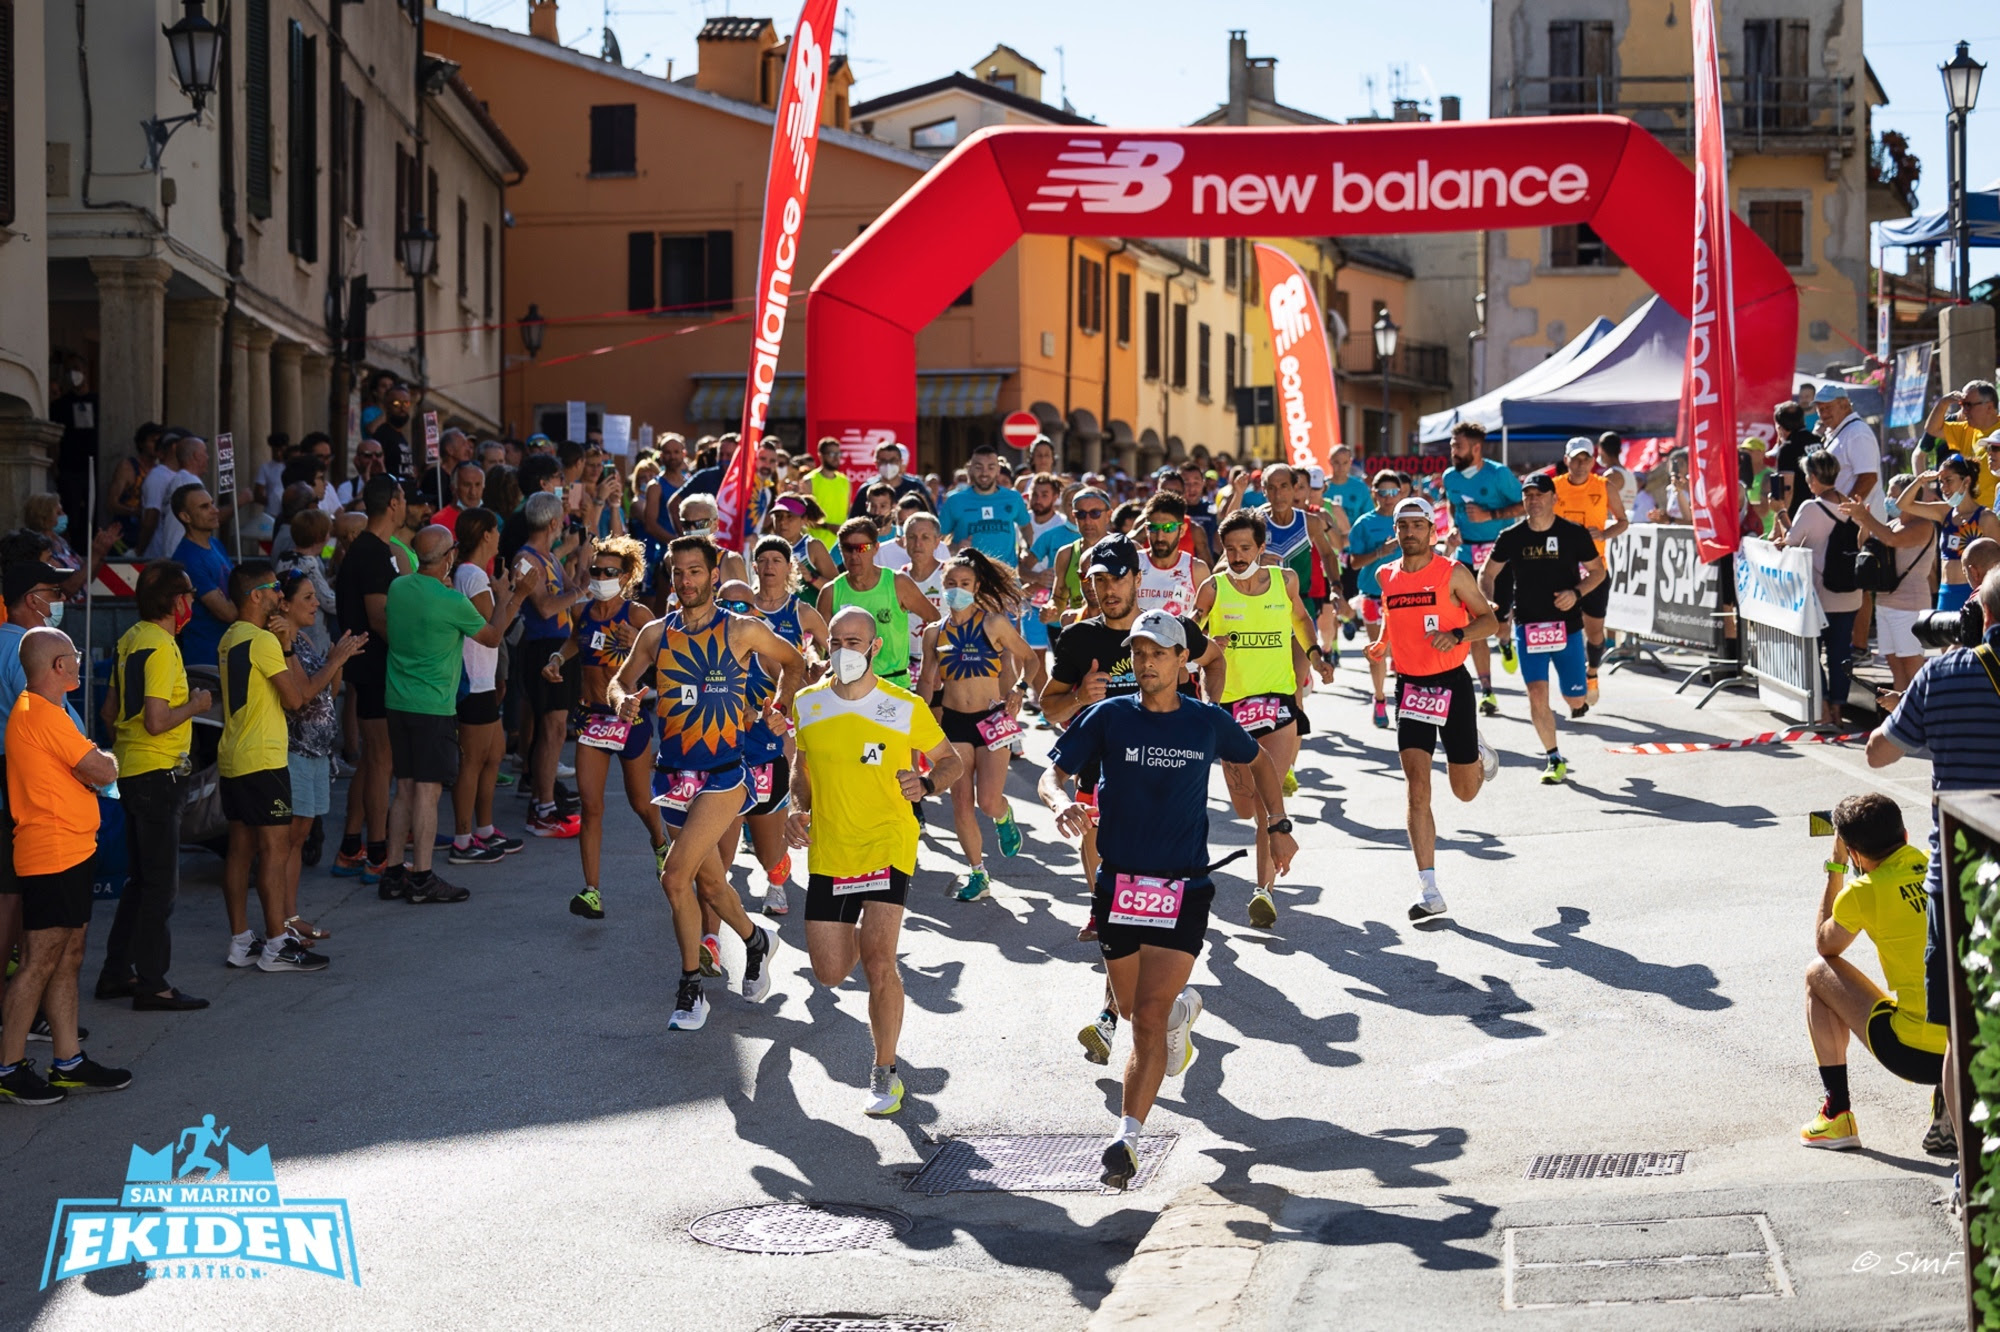 San Marino Ekiden Marathon 2022: cresce l’attesa per la maratona a staffetta per team e individuale